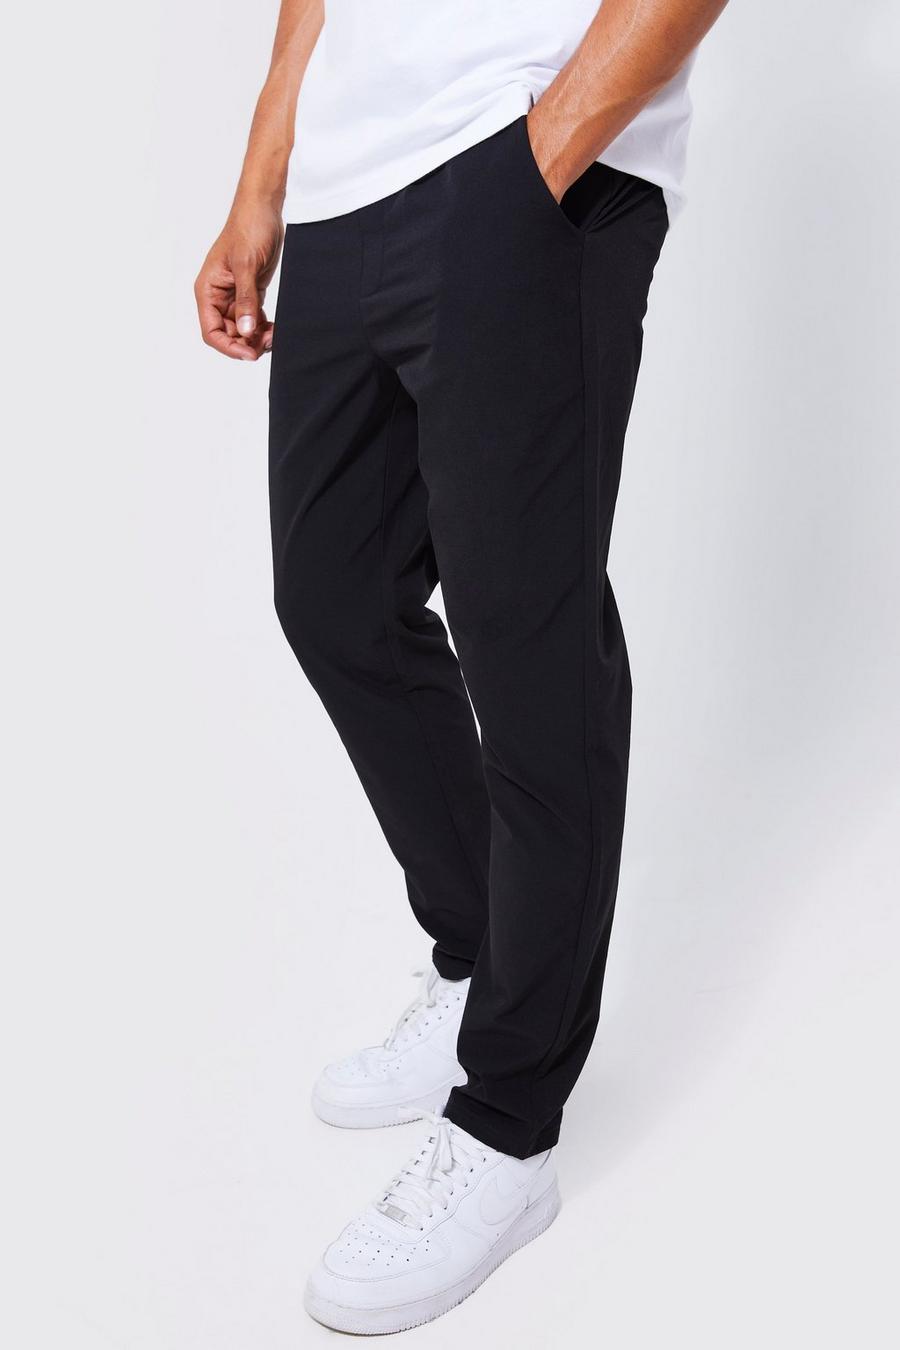 Pantaloni Slim Fit in Stretch tecnico leggero con vita elasticizzata, Black